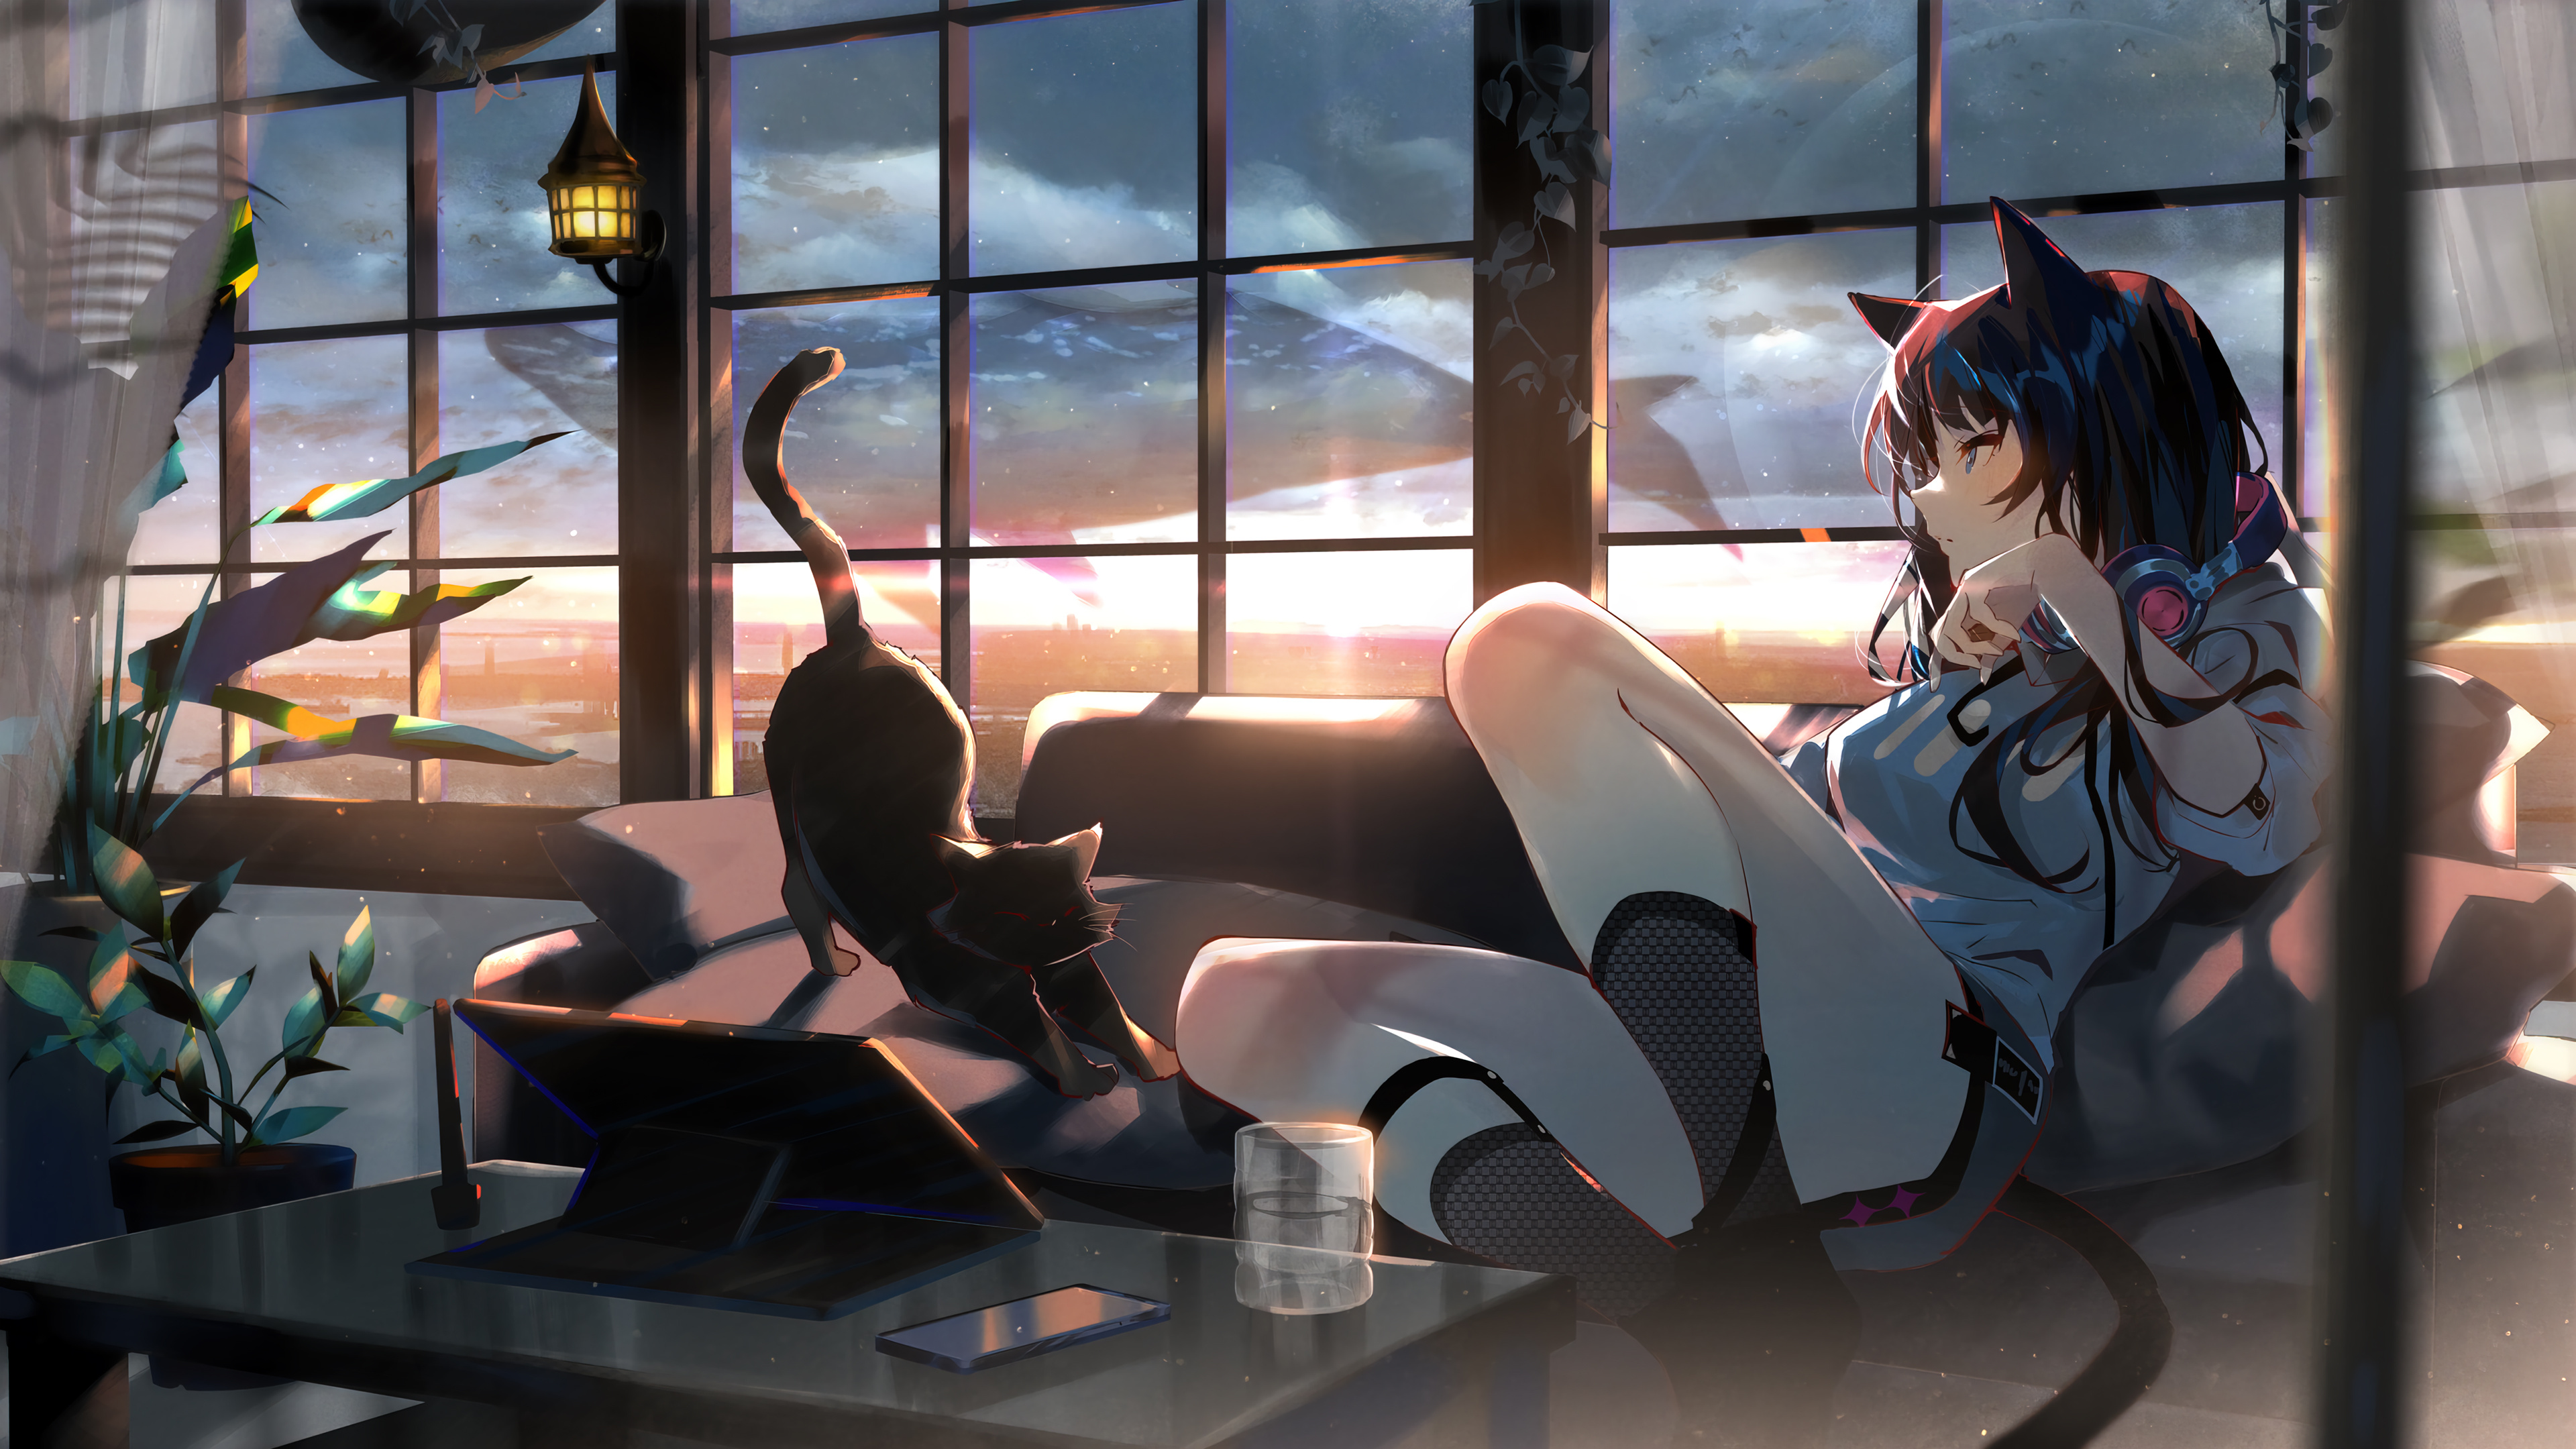 Anime Girl Cat Sunset Wallpaper 4k Pc Desktop 4810b